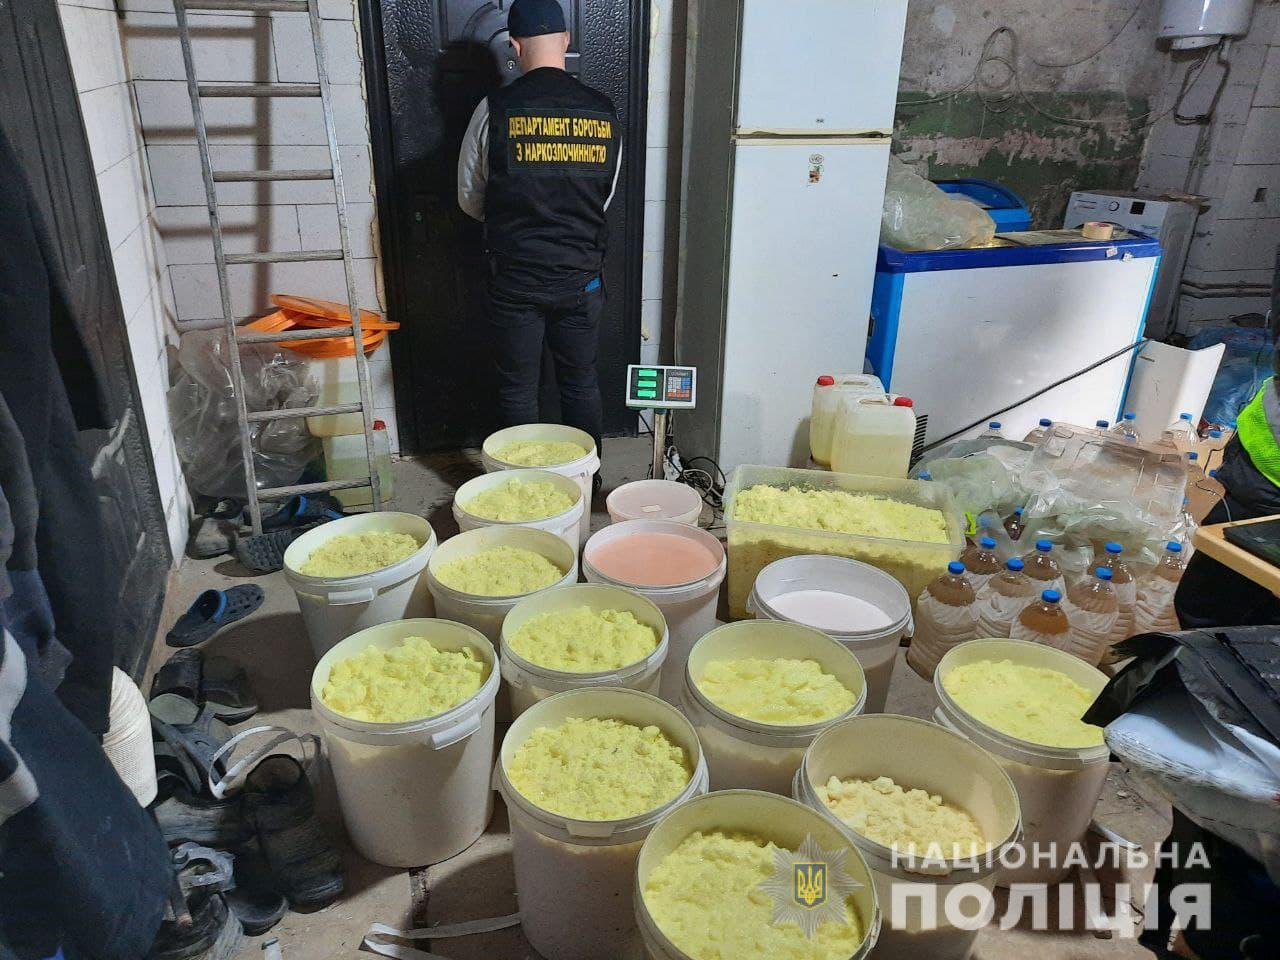 Сотрудники полиции Украины изъяли крупнейшую партию амфетамина